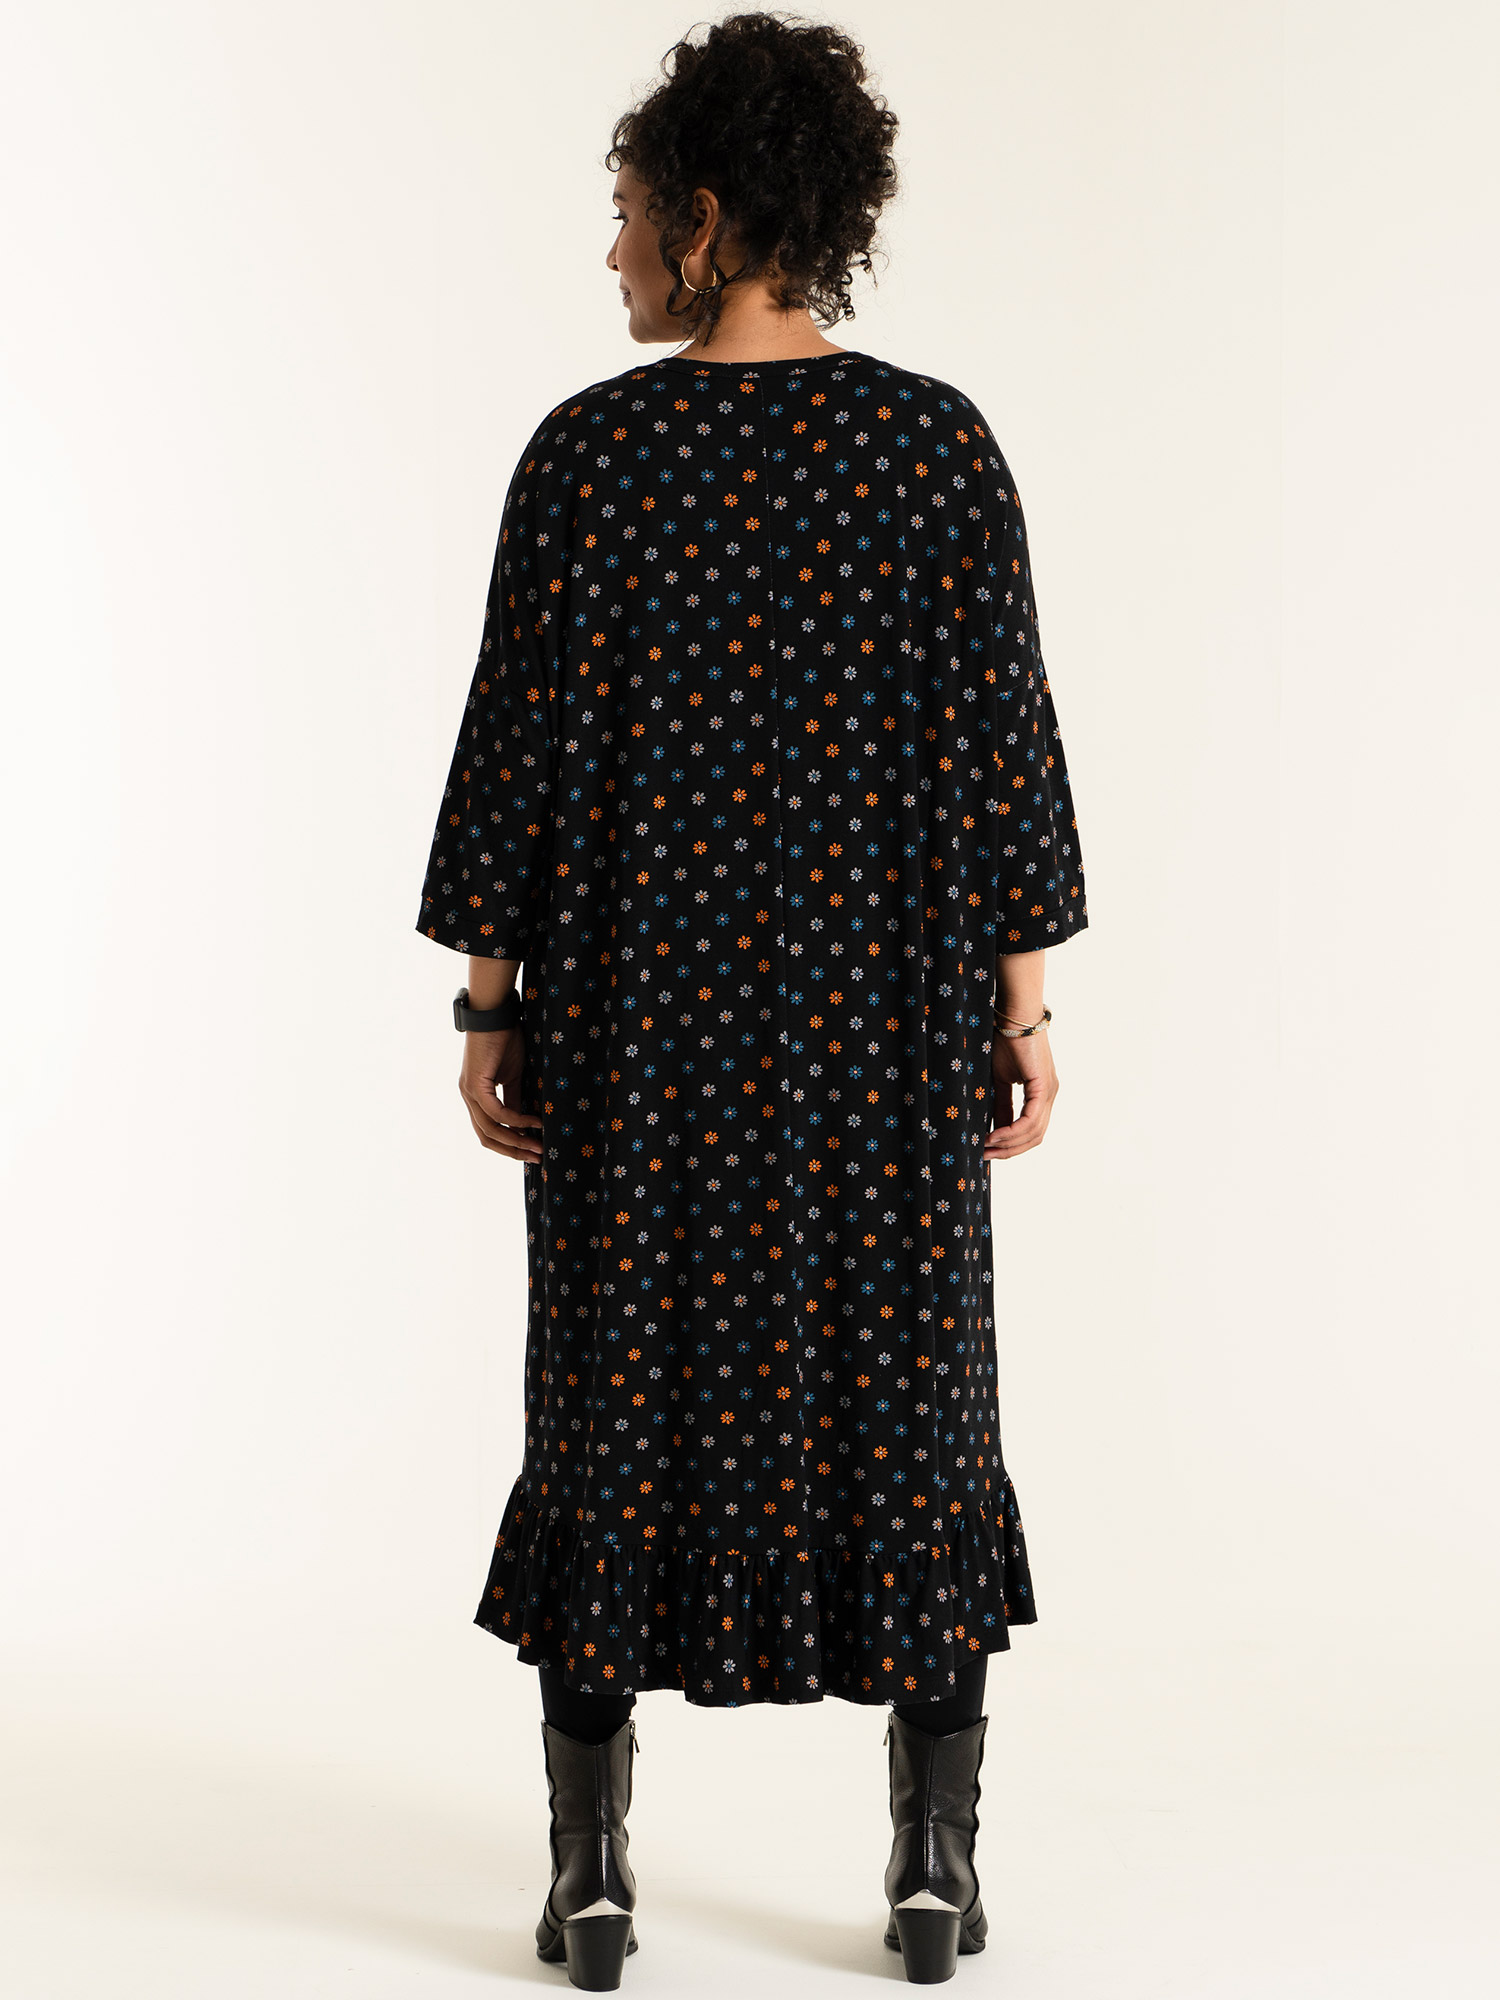 DORIS - Sort jersey kjole med blomster print fra Studio